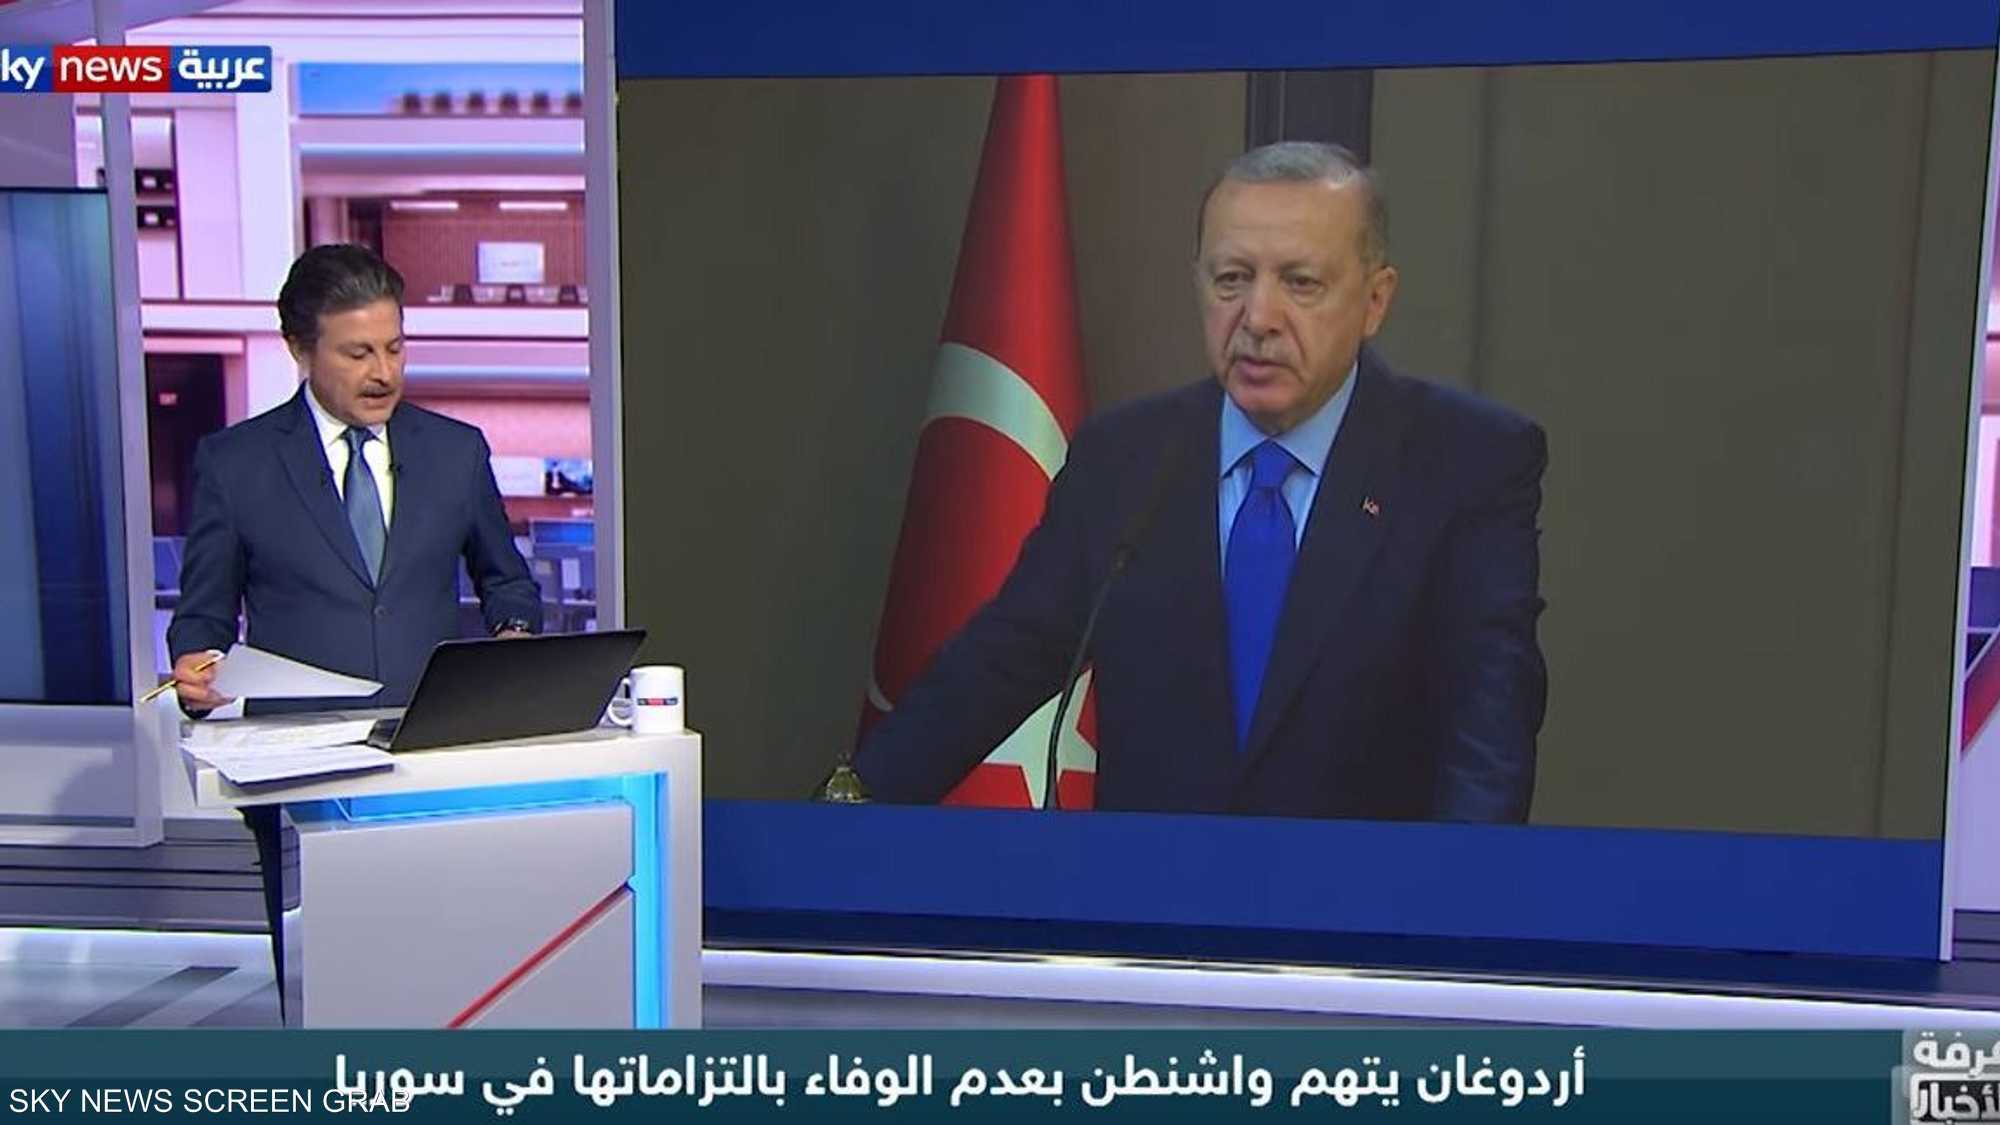 أردوغان يتهم واشنطن بعدم الوفاء بالتزاماتها في سوريا